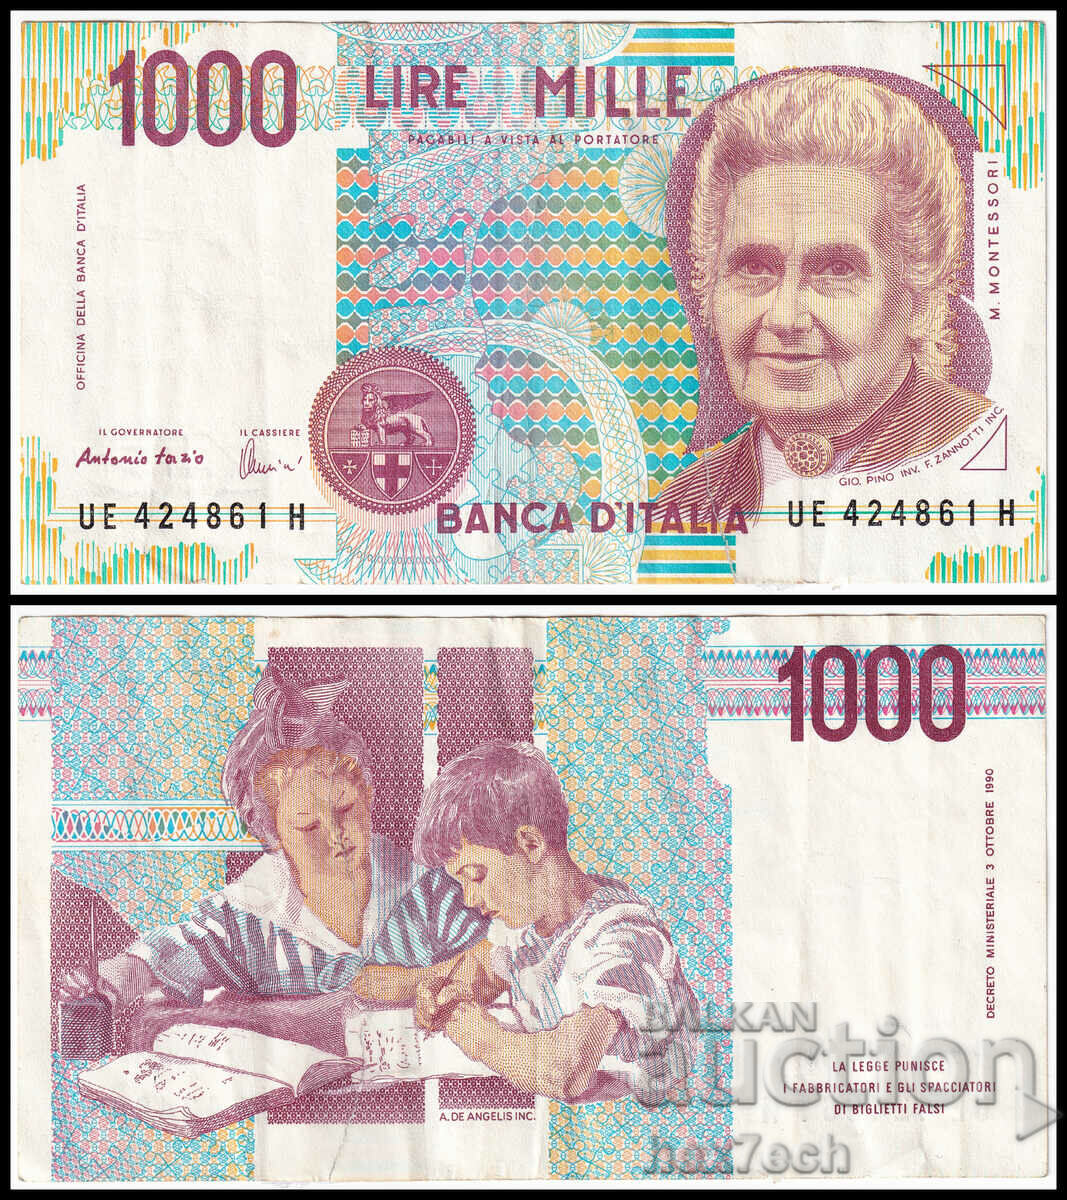 ❤️ ⭐ Италия 1990 1000 лири ⭐ ❤️